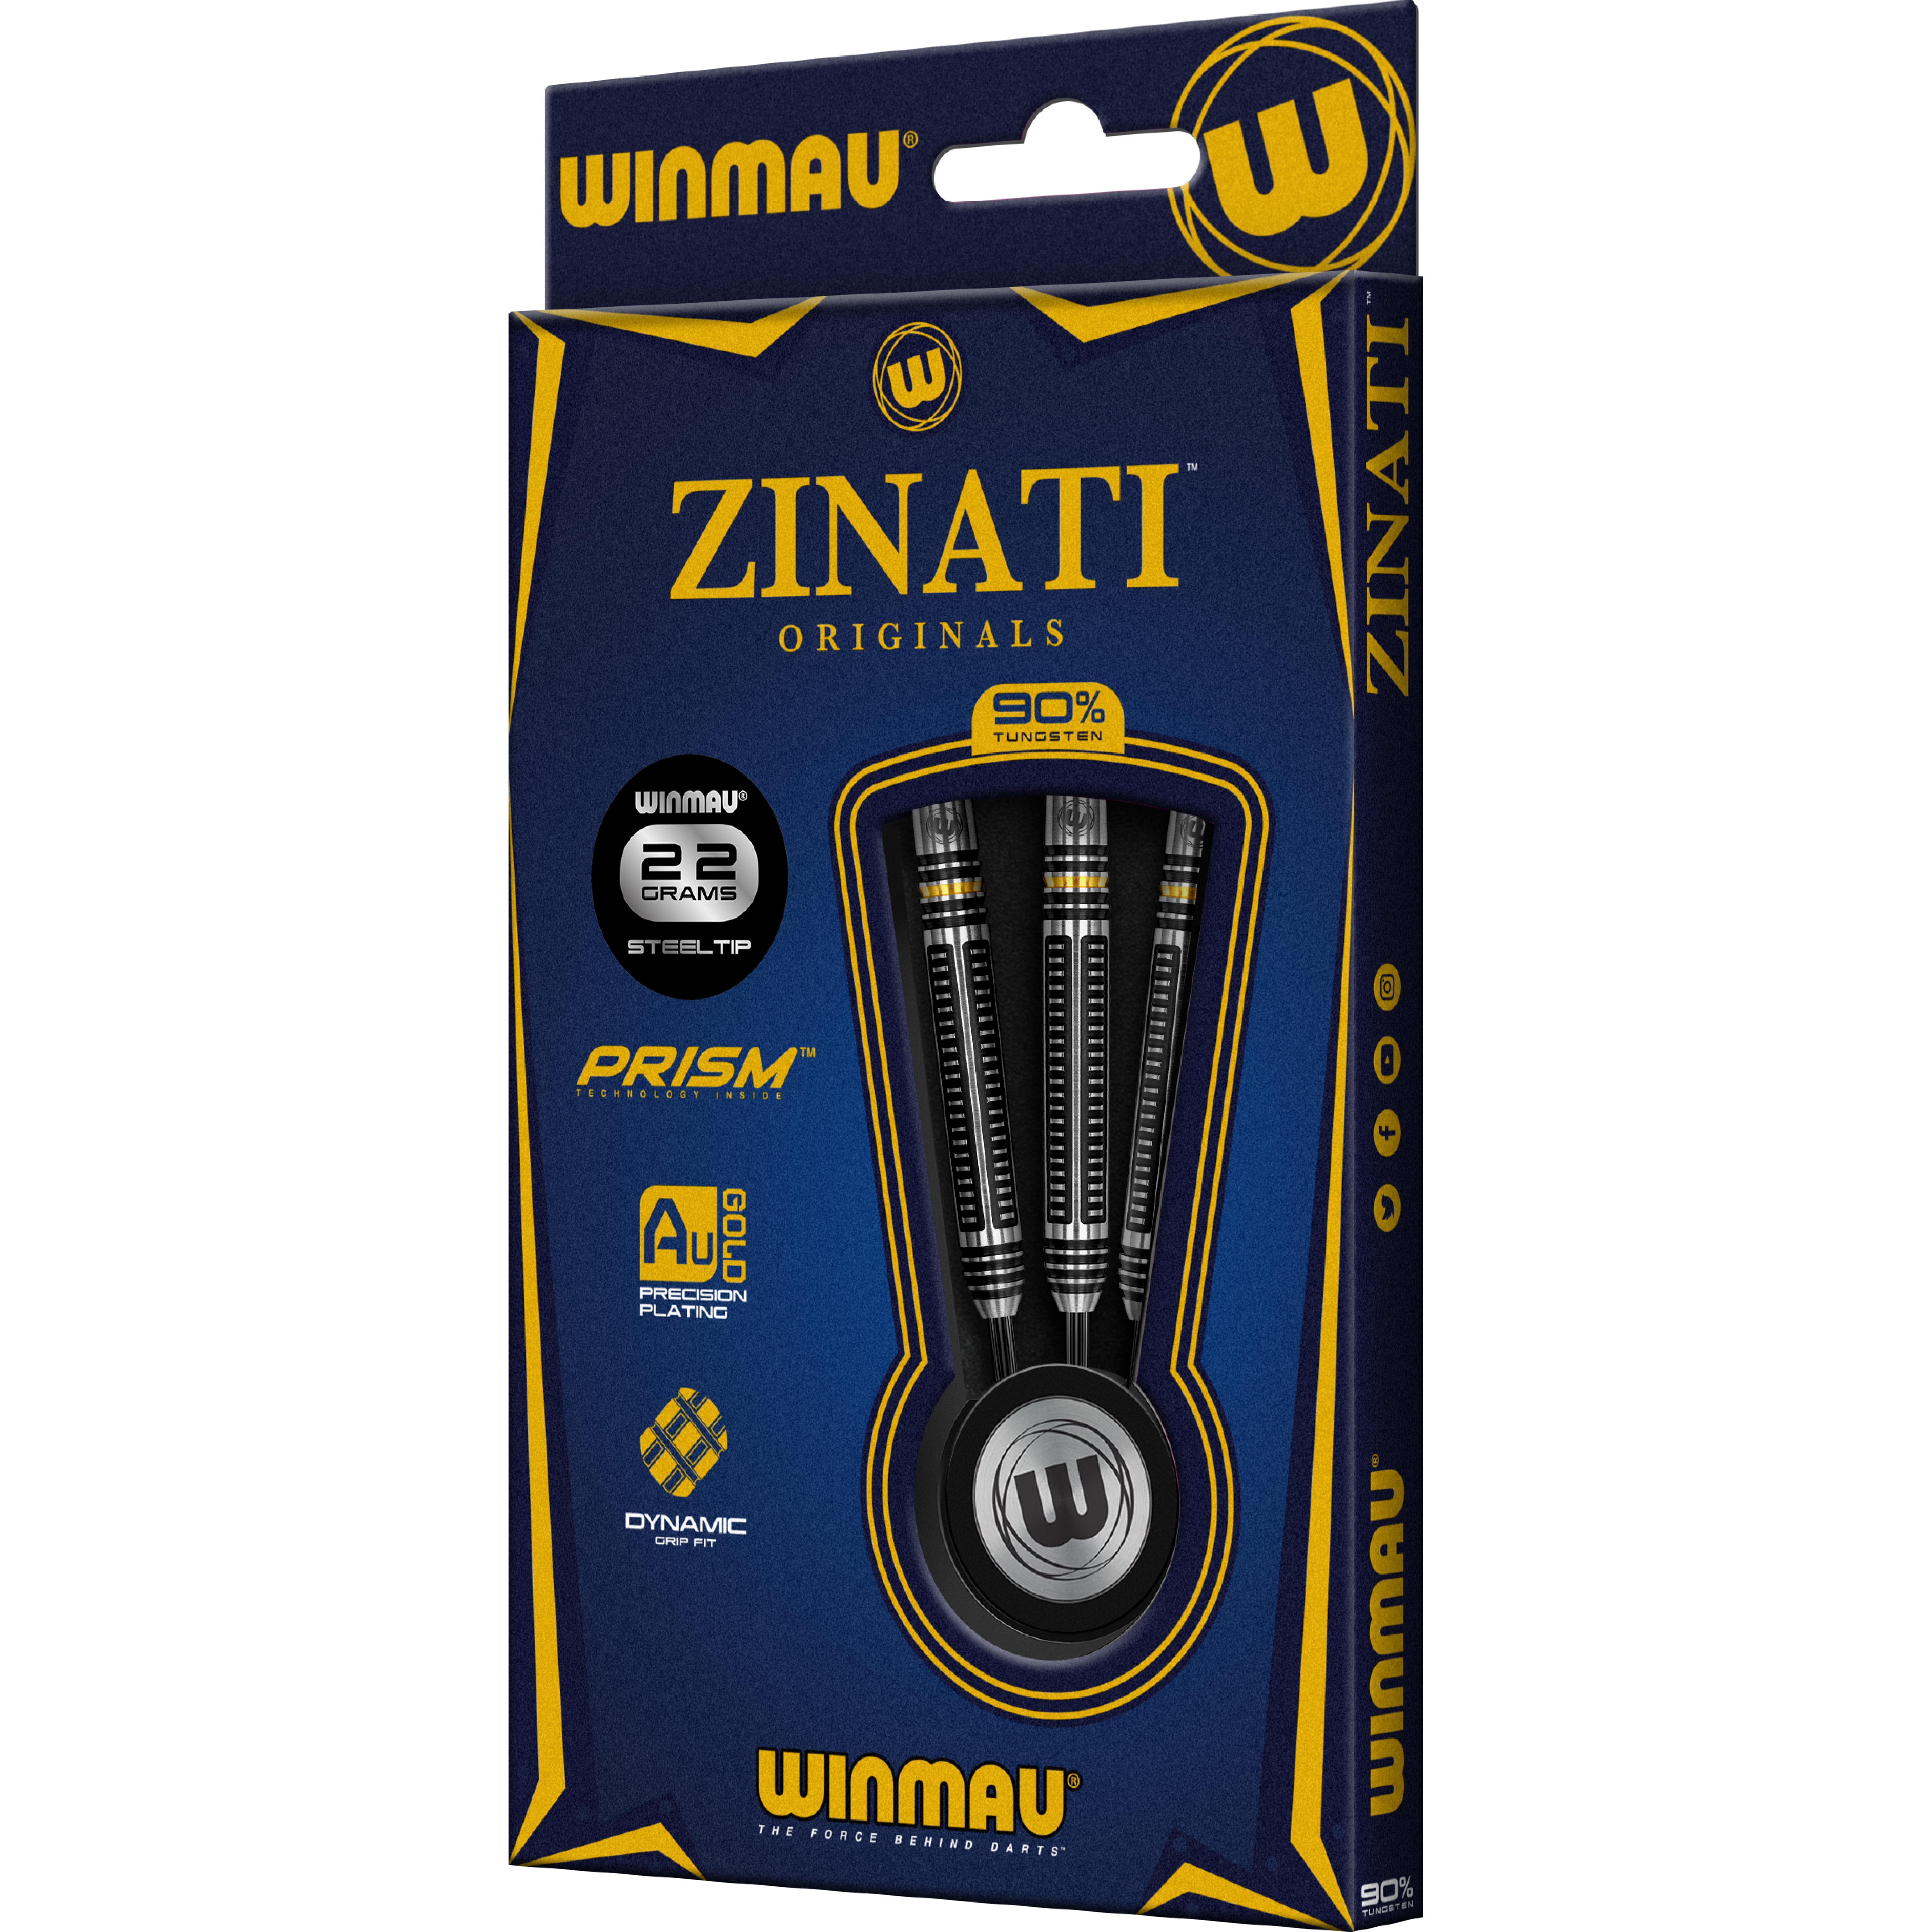 Winmau - Zinati - Steeldart